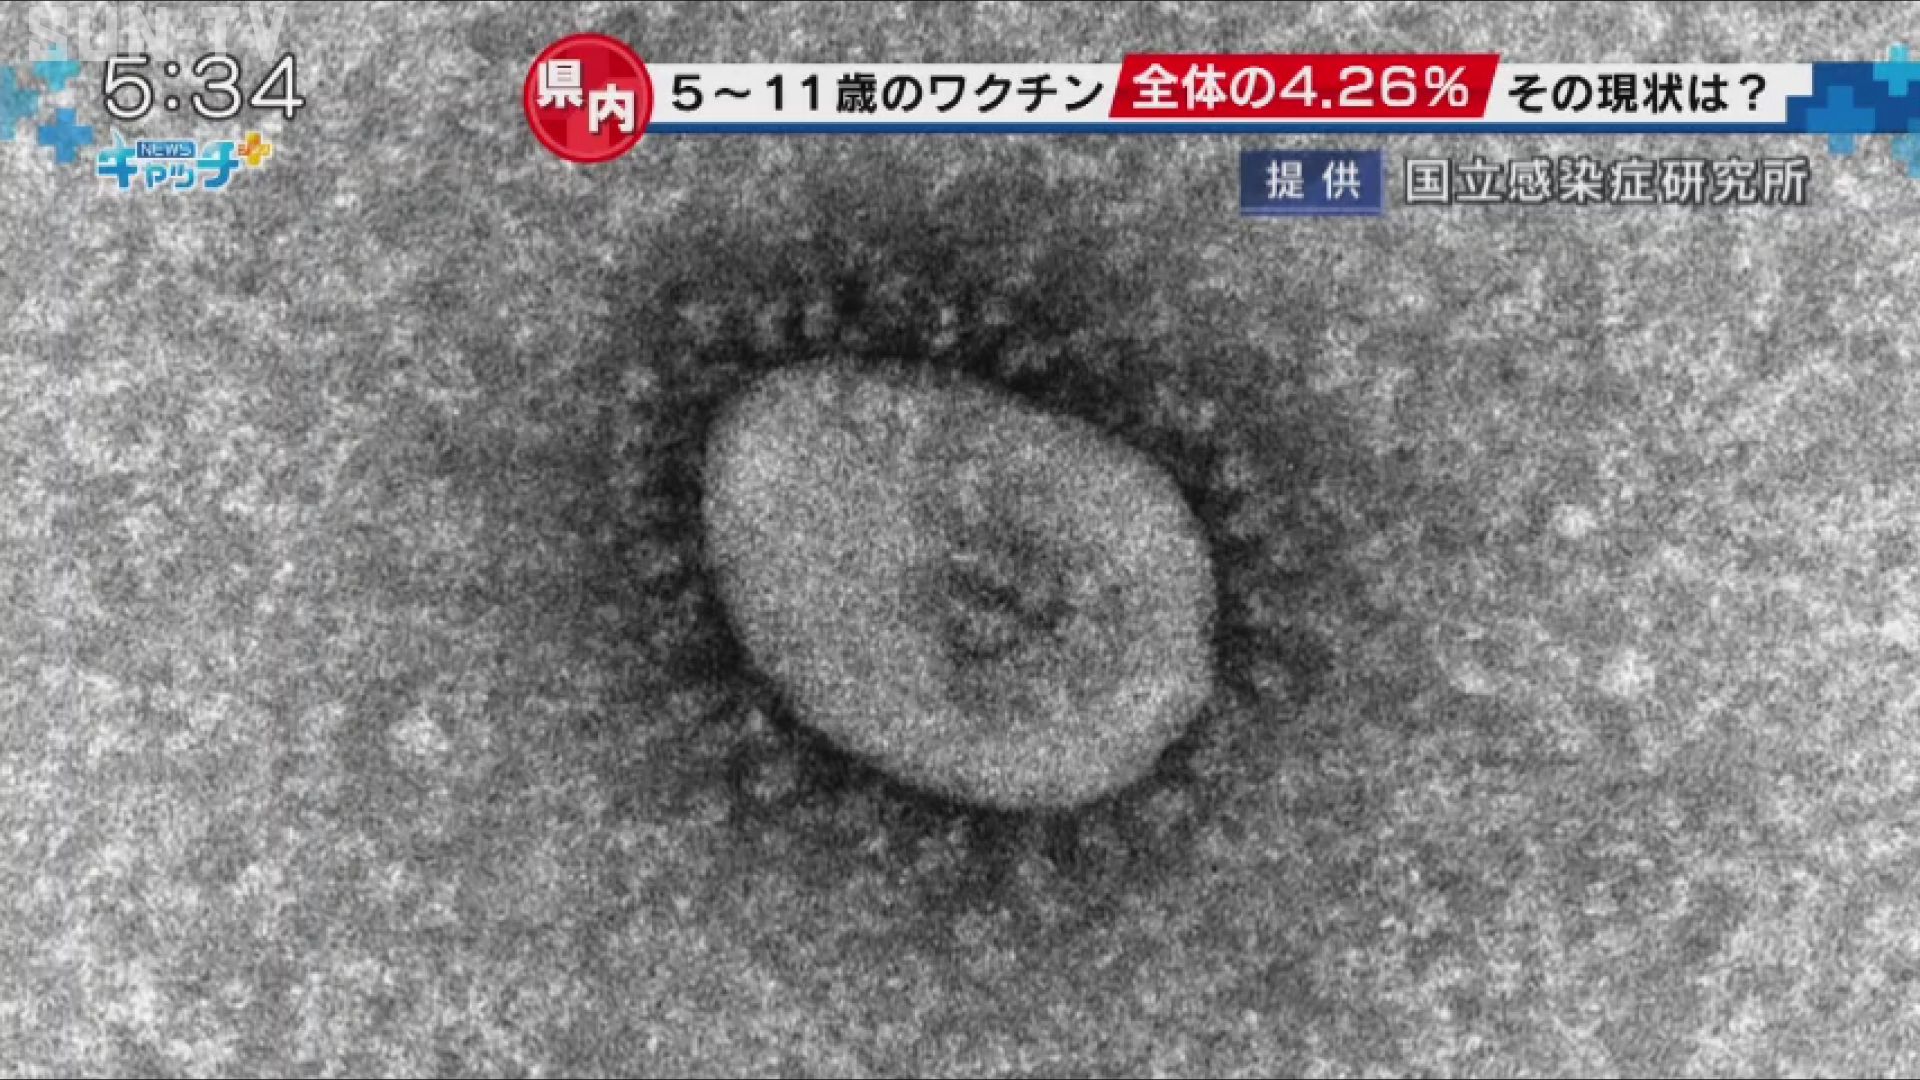 5 11歳の新型コロナワクチン接種開始から1カ月 兵庫県内の接種率は4 26 サンテレビニュース